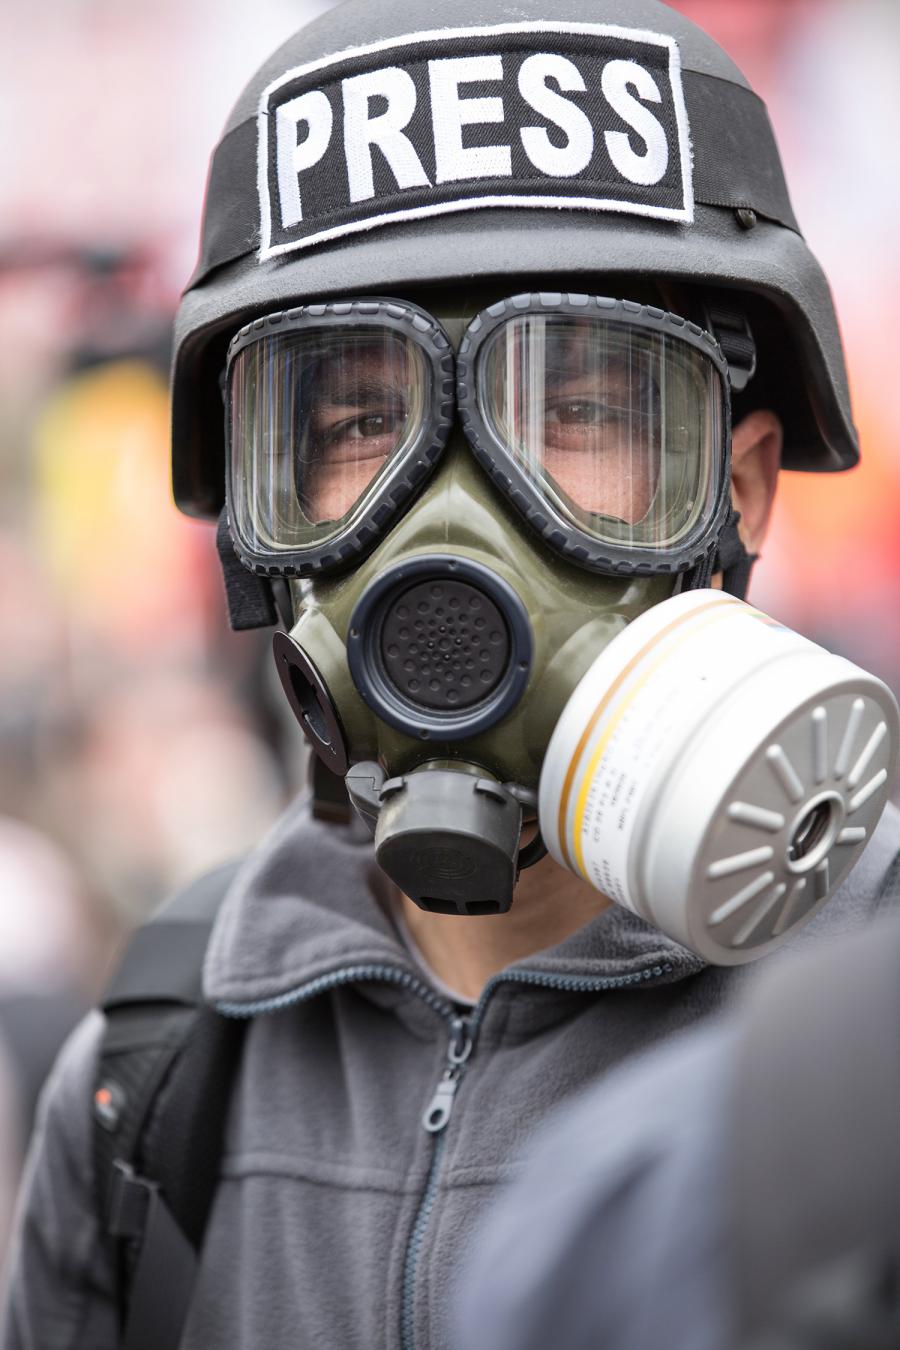 Mand med militærhjelm og gasmaske. Der står "Press" på hjelmen